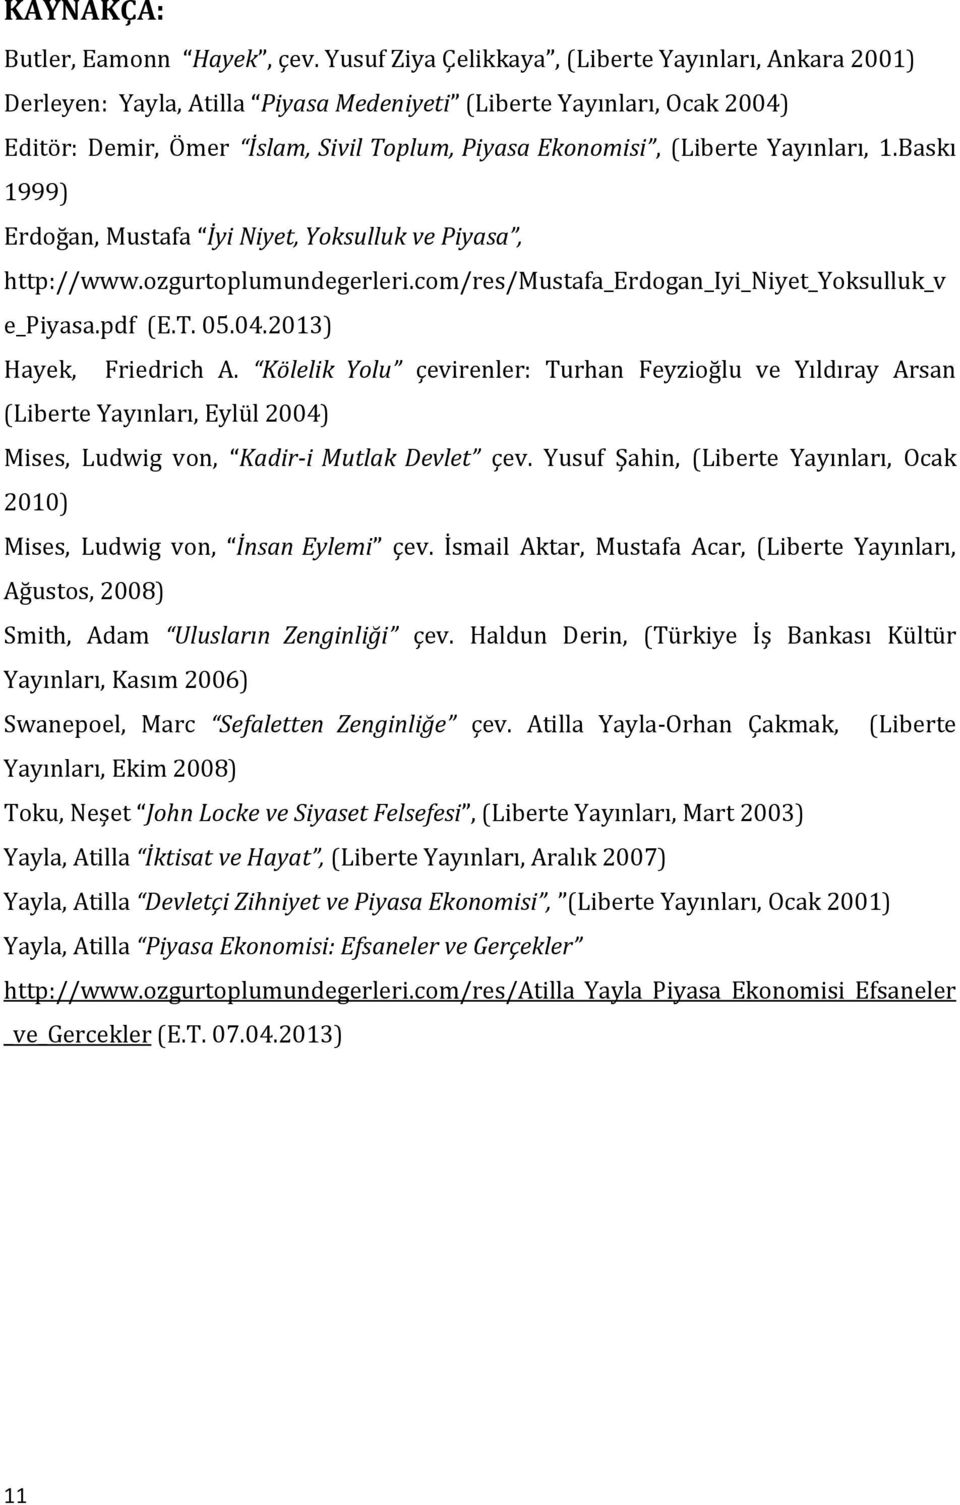 Yayınları, 1.Baskı 1999) Erdoğan, Mustafa İyi Niyet, Yoksulluk ve Piyasa, http://www.ozgurtoplumundegerleri.com/res/mustafa_erdogan_iyi_niyet_yoksulluk_v e_piyasa.pdf (E.T. 05.04.